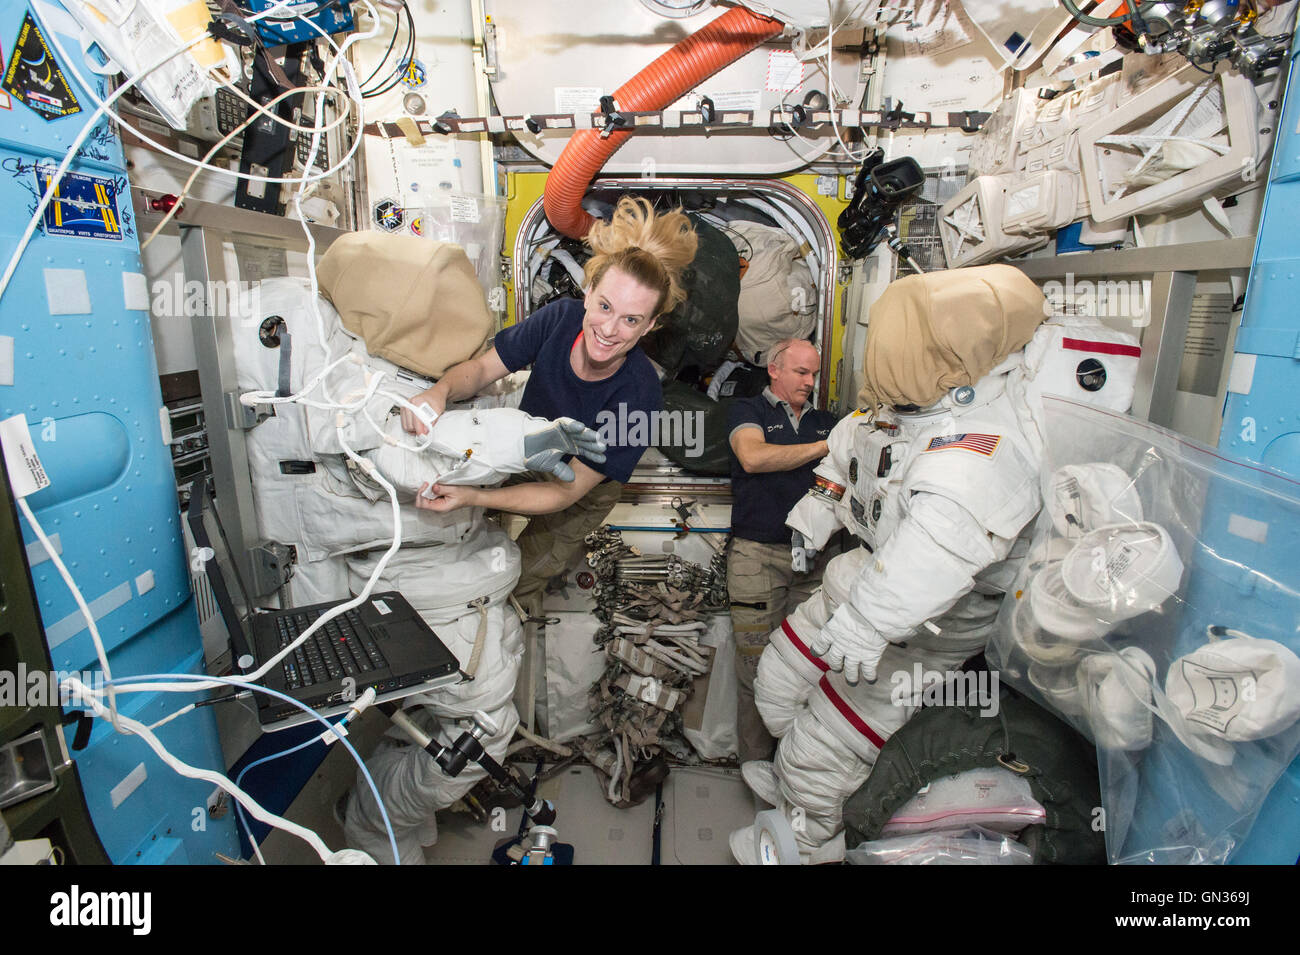 Internationale Raumstation ISS-Expedition 48 Besatzungsmitglieder Kate Rubins (links) und Jeff Williams (rechts) bereiten ihre Raumanzüge innerhalb der Quest-Luftschleuse für ihre bevorstehende Weltraumspaziergang 28. Juli 2016. Rubins und Williams dirigiert einen Weltraumspaziergang am 19. August 2016, den ersten internationalen Docking Adapter zu installieren. Stockfoto